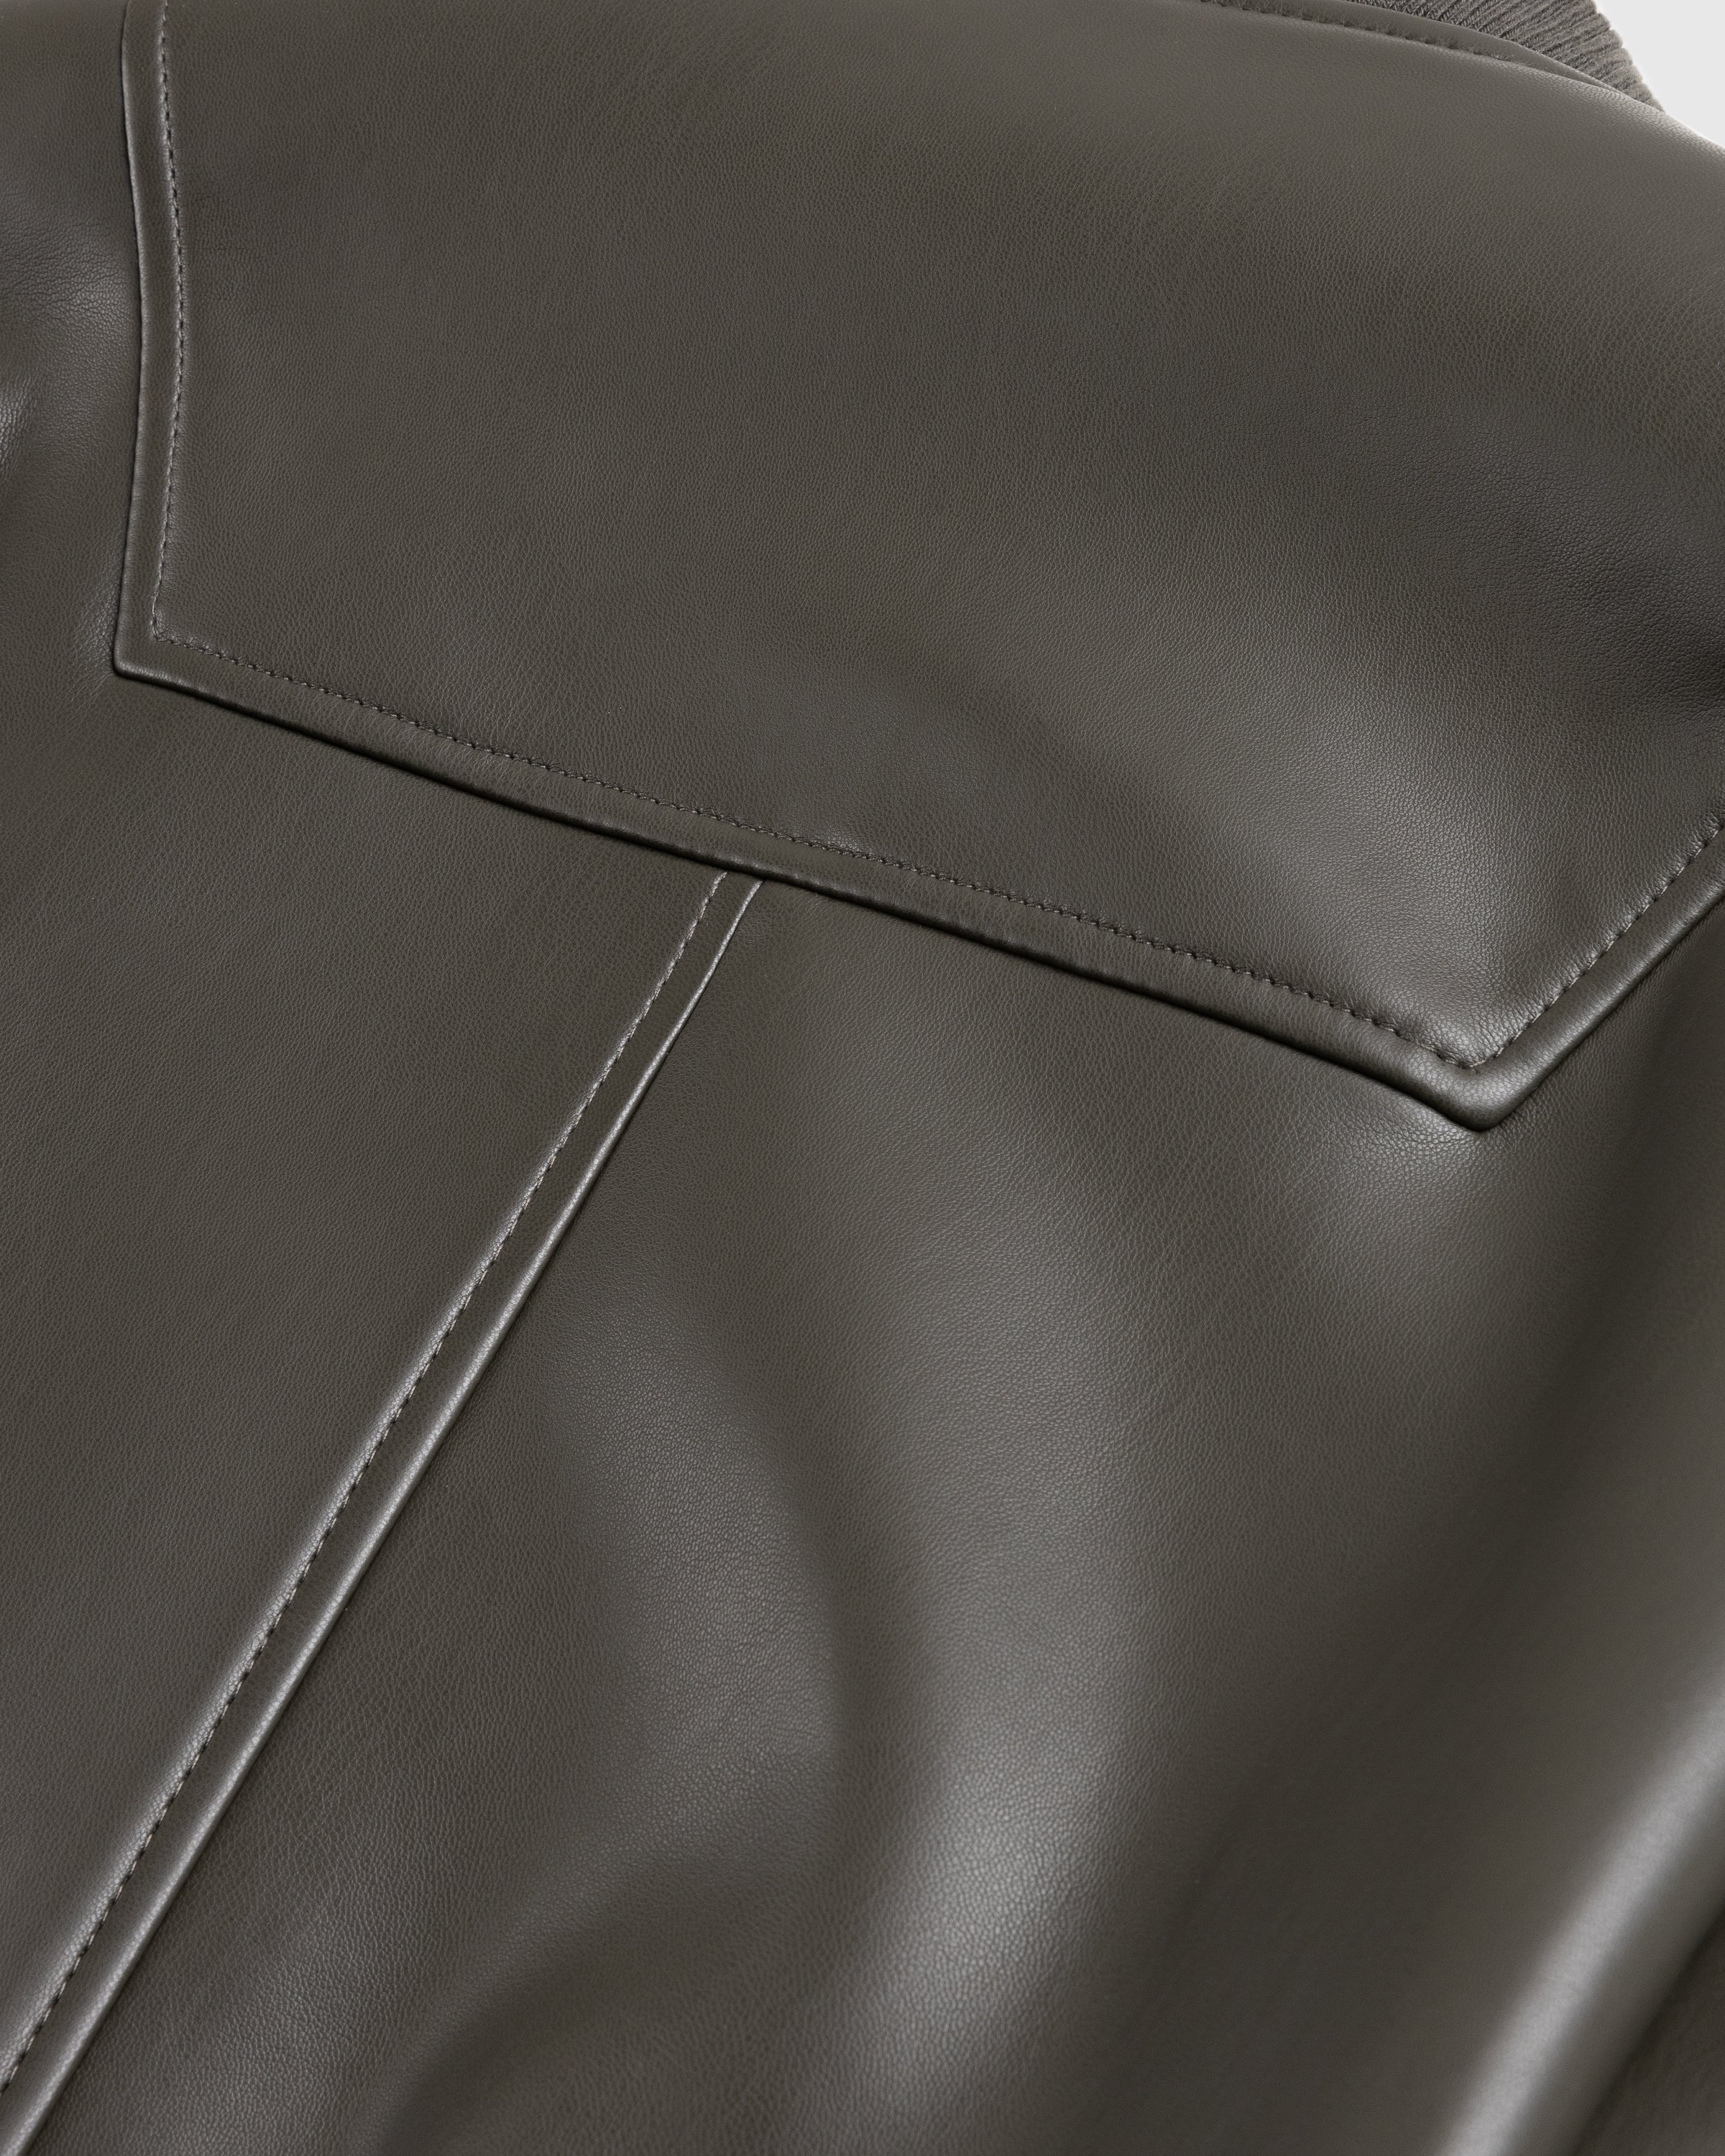 Trussardi - Jacket Faux Leather Bonded - Clothing - Green - Image 6